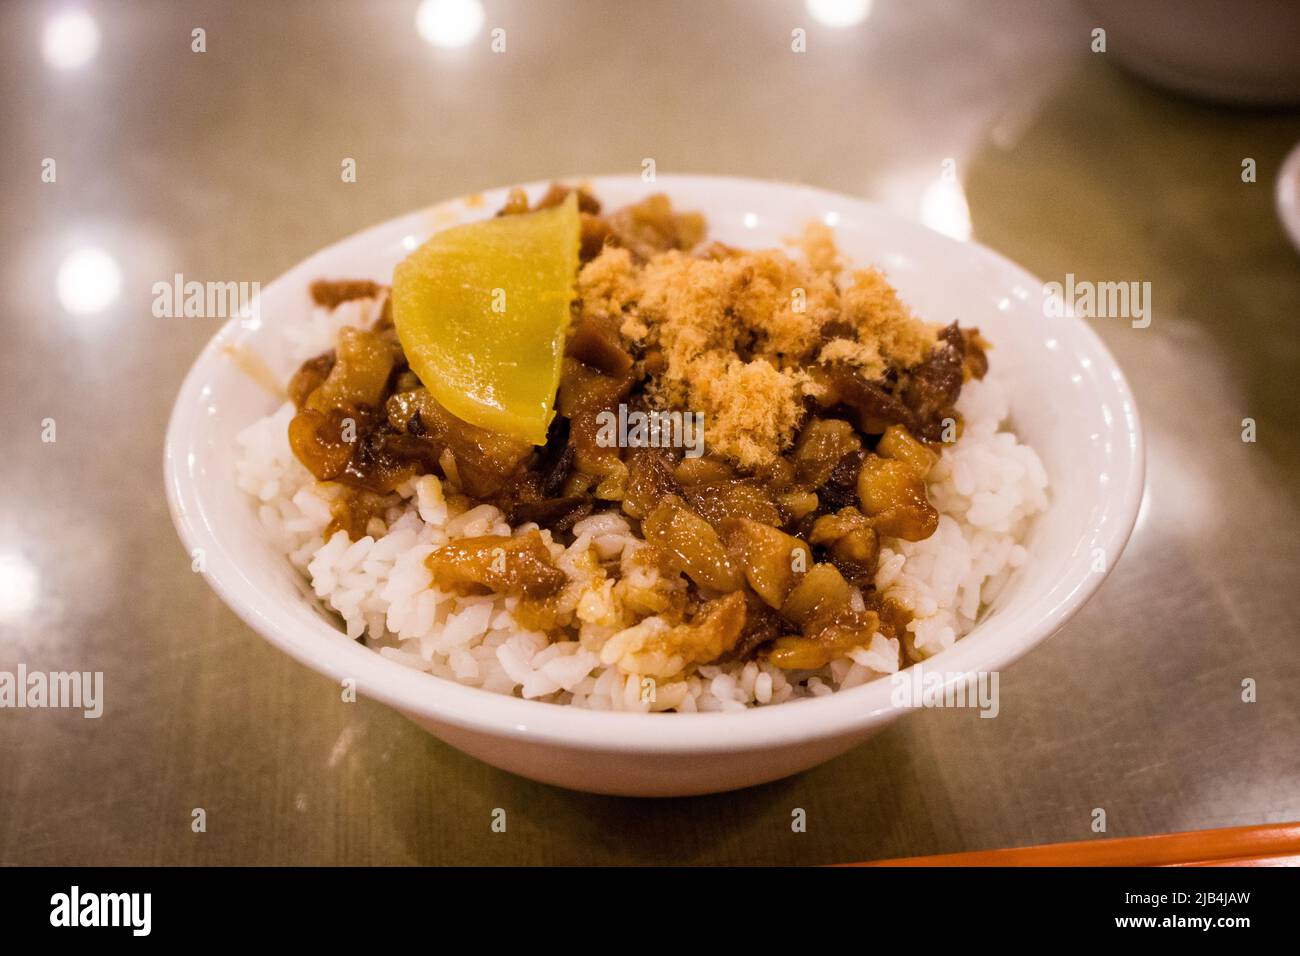 LO bah png, plat de riz au porc haché taïwanais, sur table dans le restaurant local. Lo bah png est un type de plat de gaifan (vu à Taïwan et au Fujian du sud) Banque D'Images